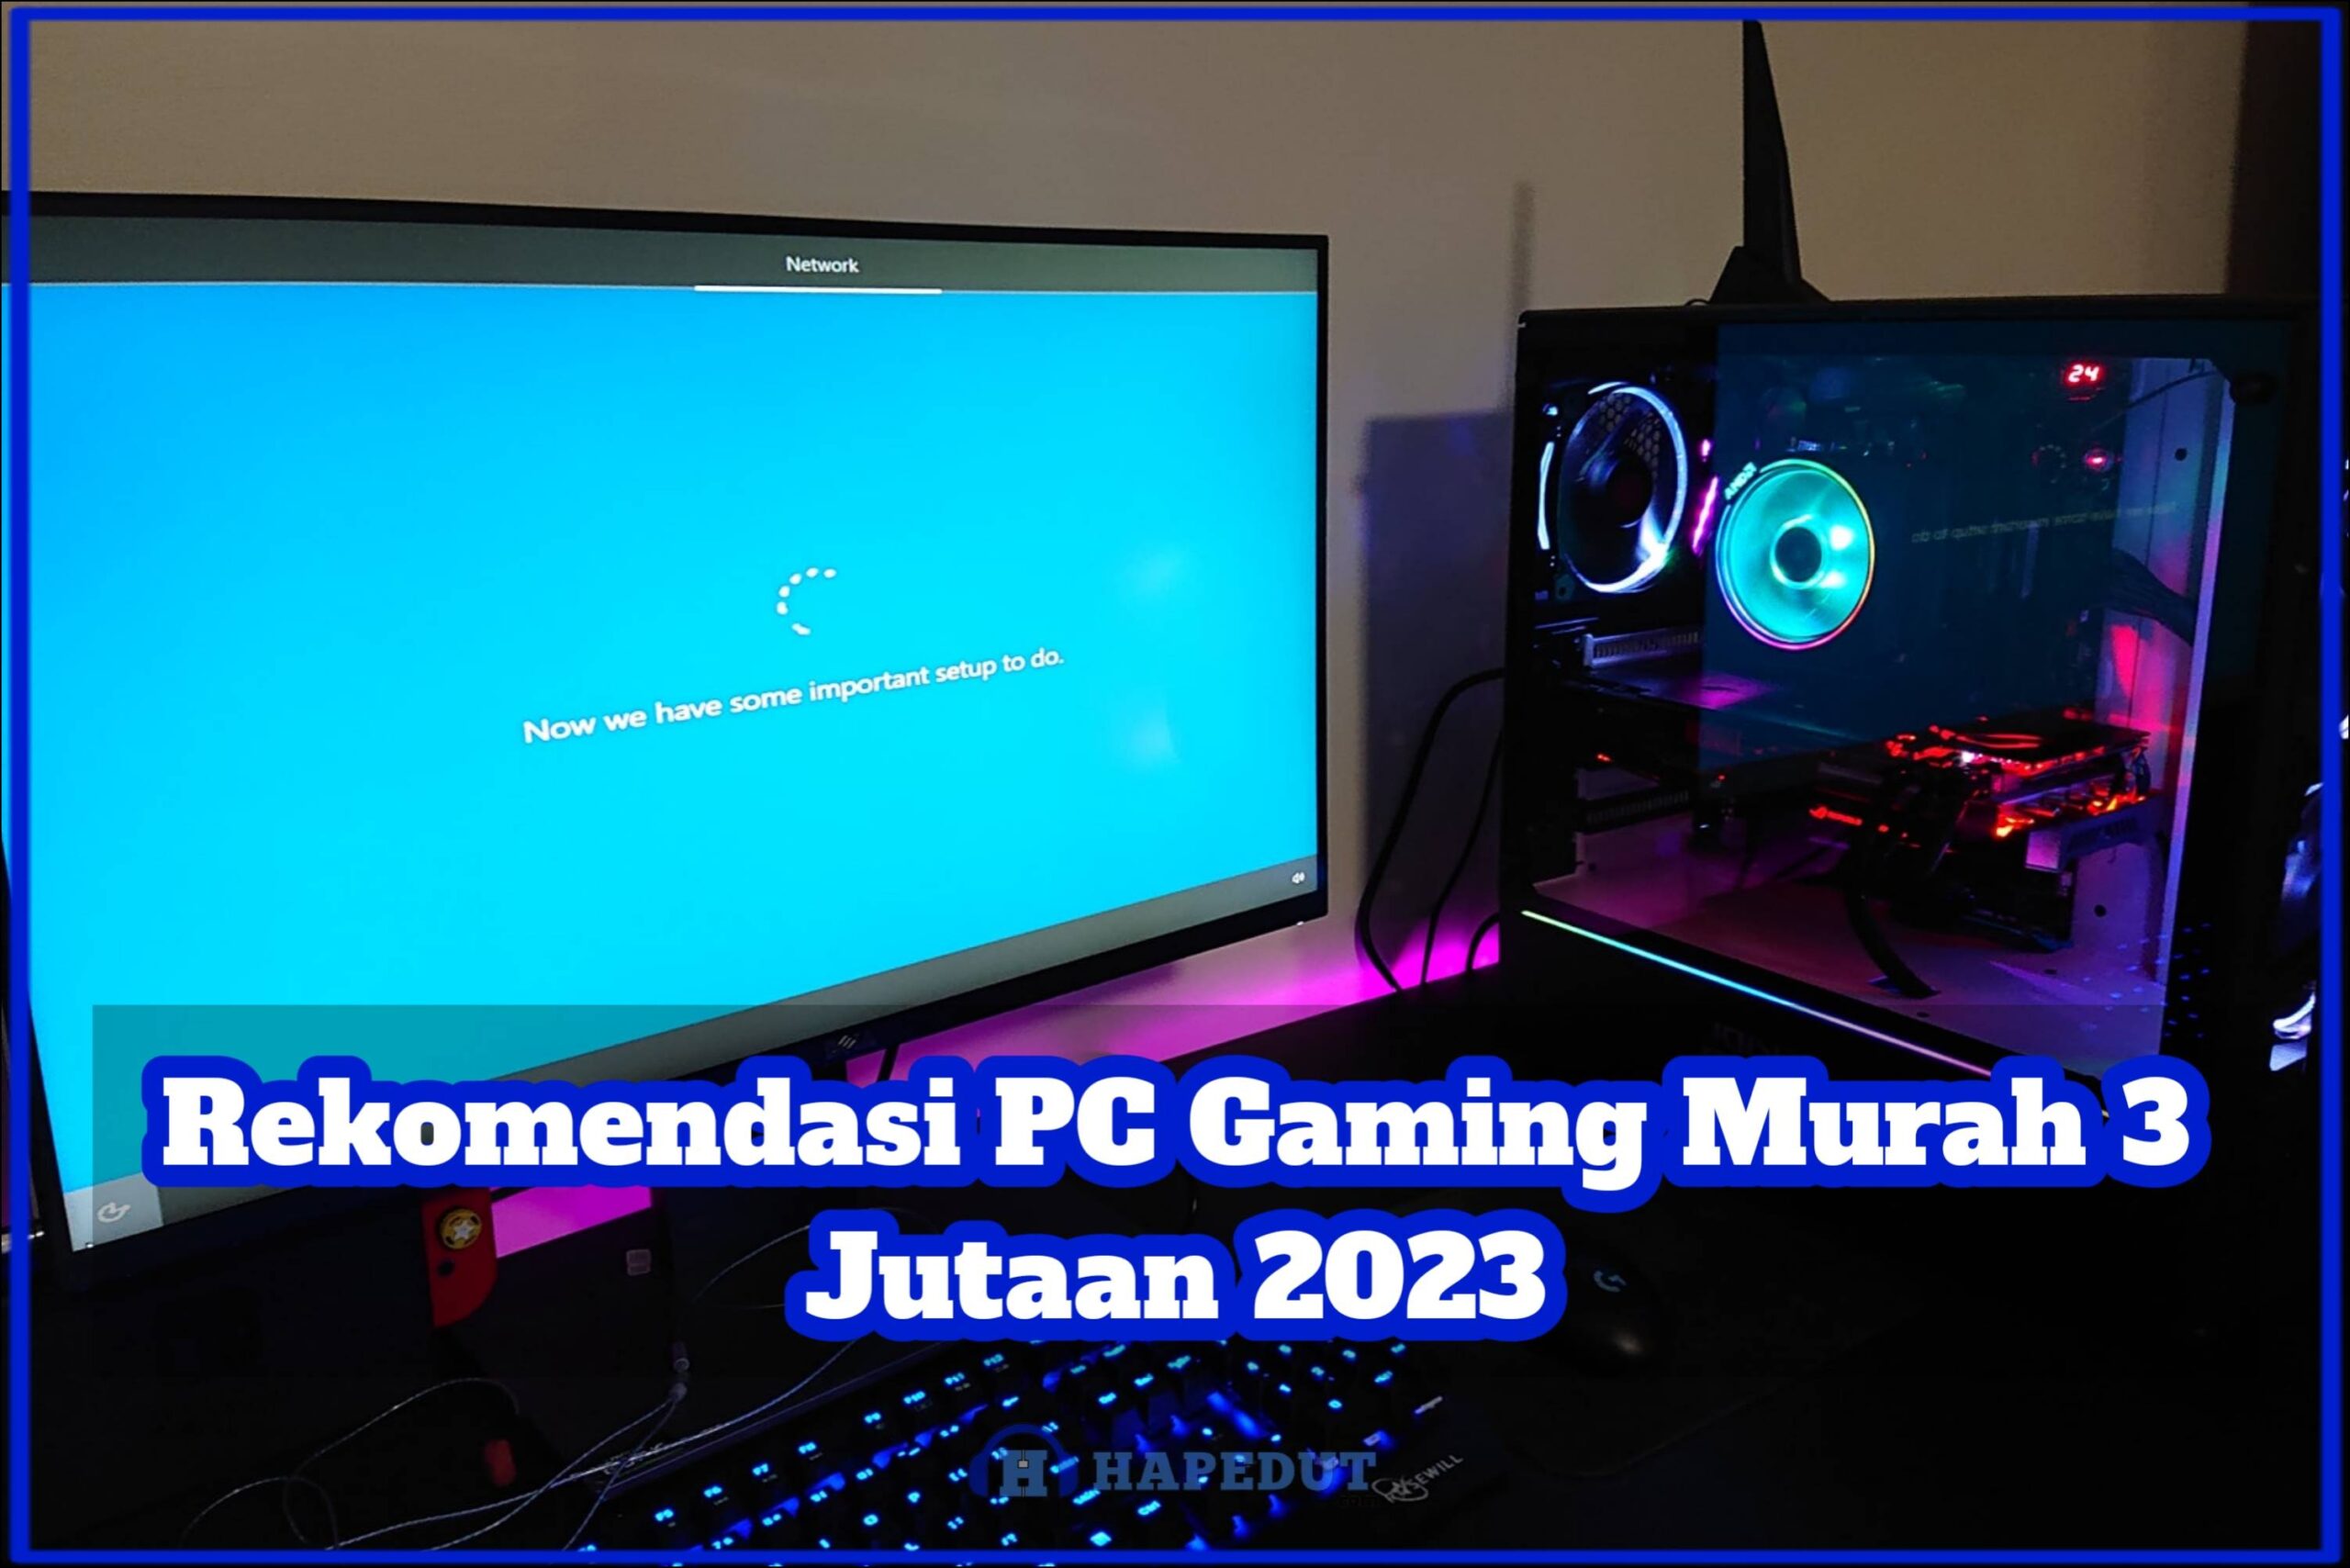 Rekomendasi PC Gaming Murah 3 Jutaan 2023